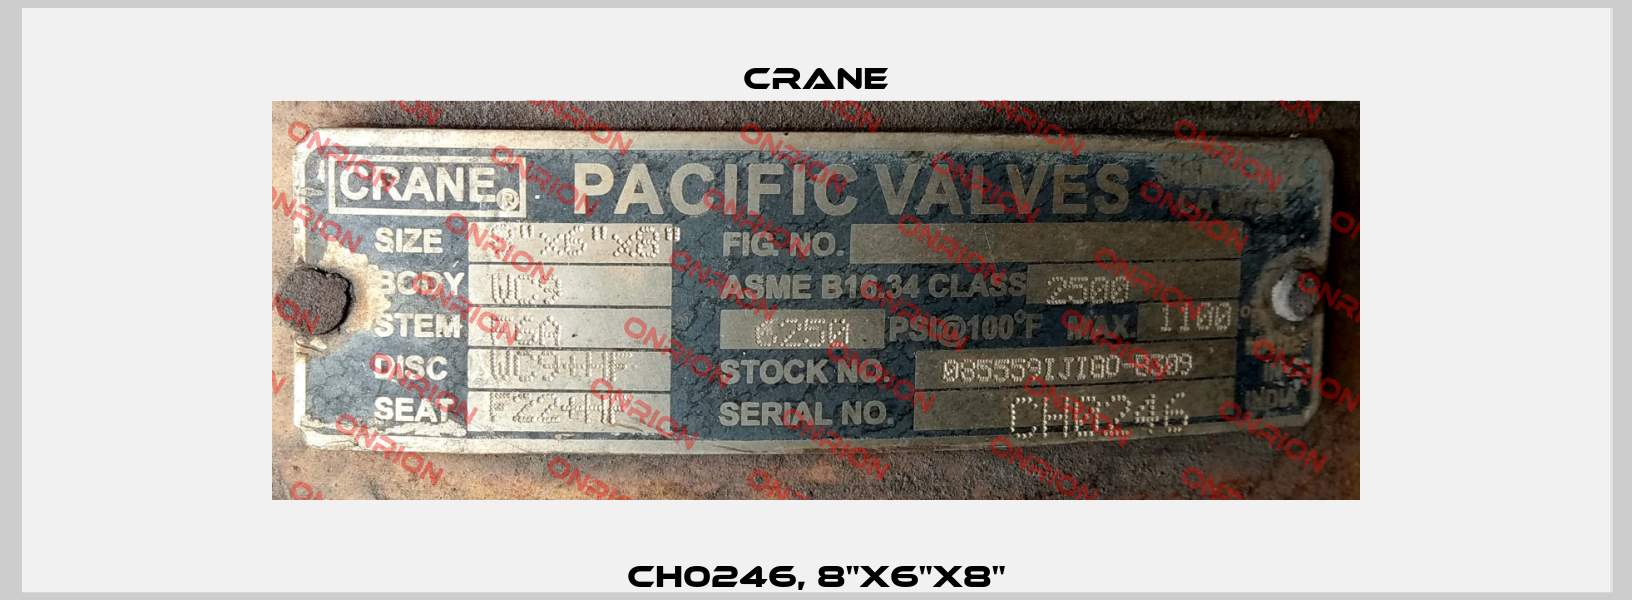 CH0246, 8"x6"x8" Crane